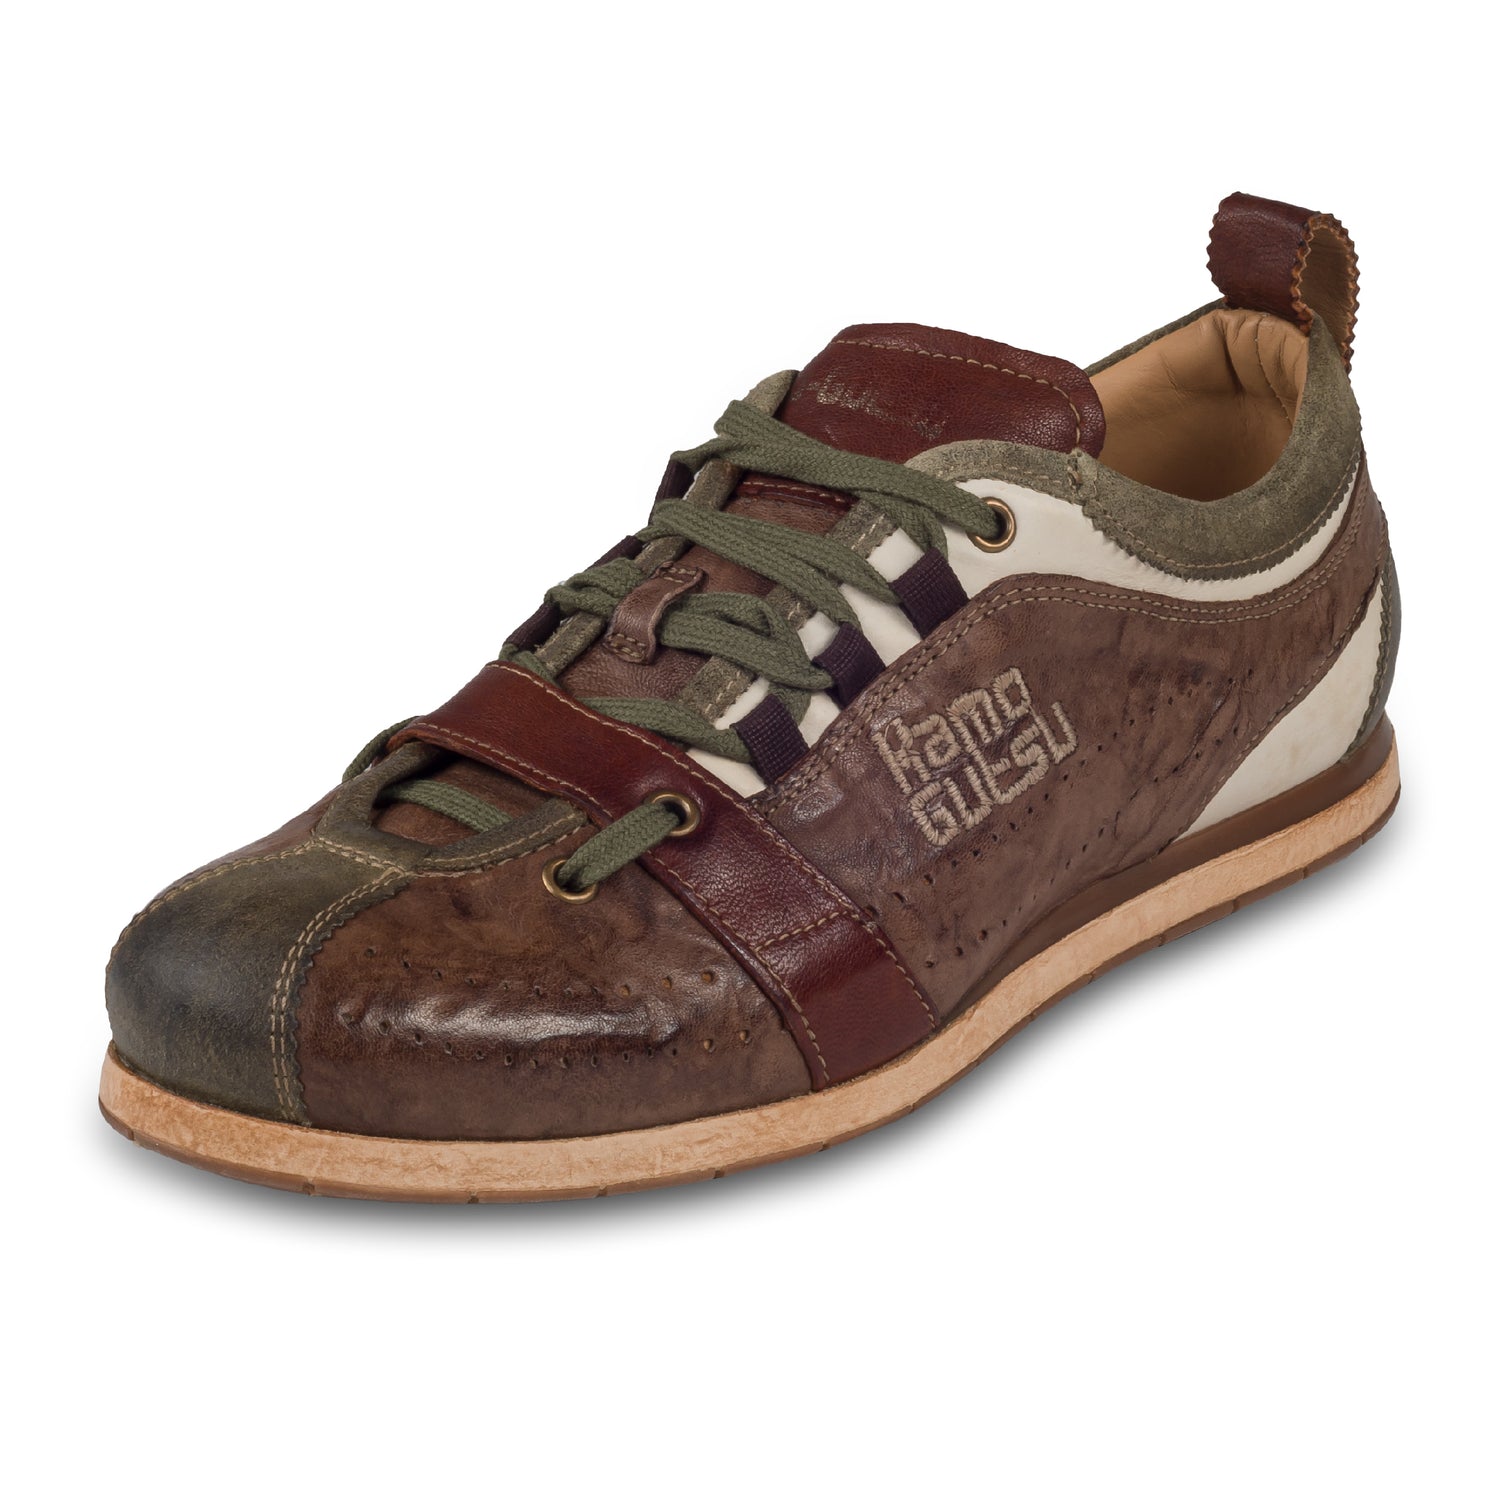 KAMO-GUTSU Italienischer Herren Leder Sneaker, braun mit grün, Retro-Optik, Modell TIFO-017 fango marrone. Handgefertigt. Schräge Ansicht linker Schuh.